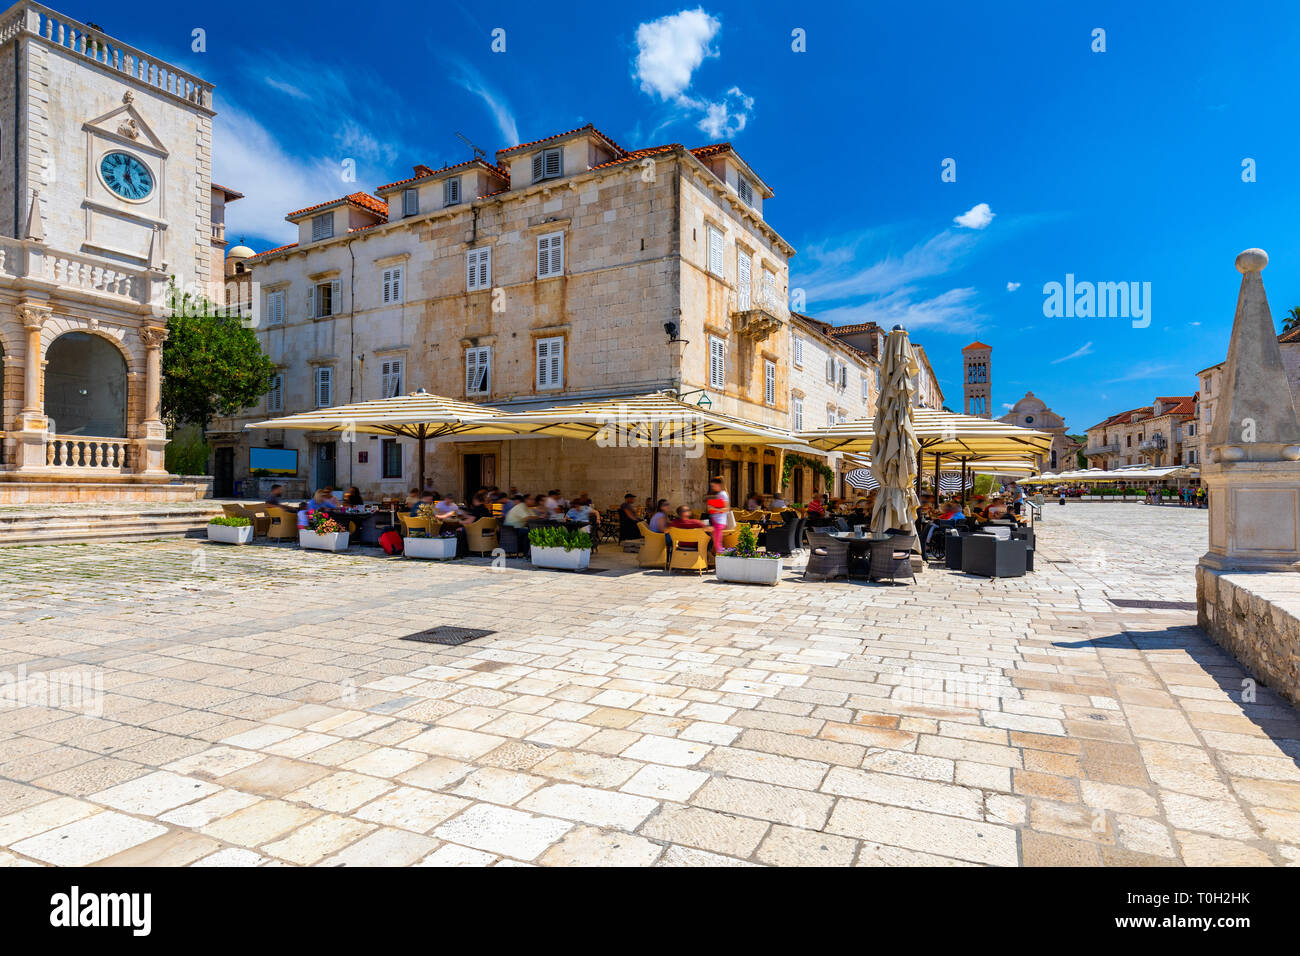 Place principale dans la vieille ville médiévale de Hvar. Hvar est l'une des destinations touristiques les plus populaires en Croatie en été. Pjaca Central square de la ville de Hvar, Dalma Banque D'Images